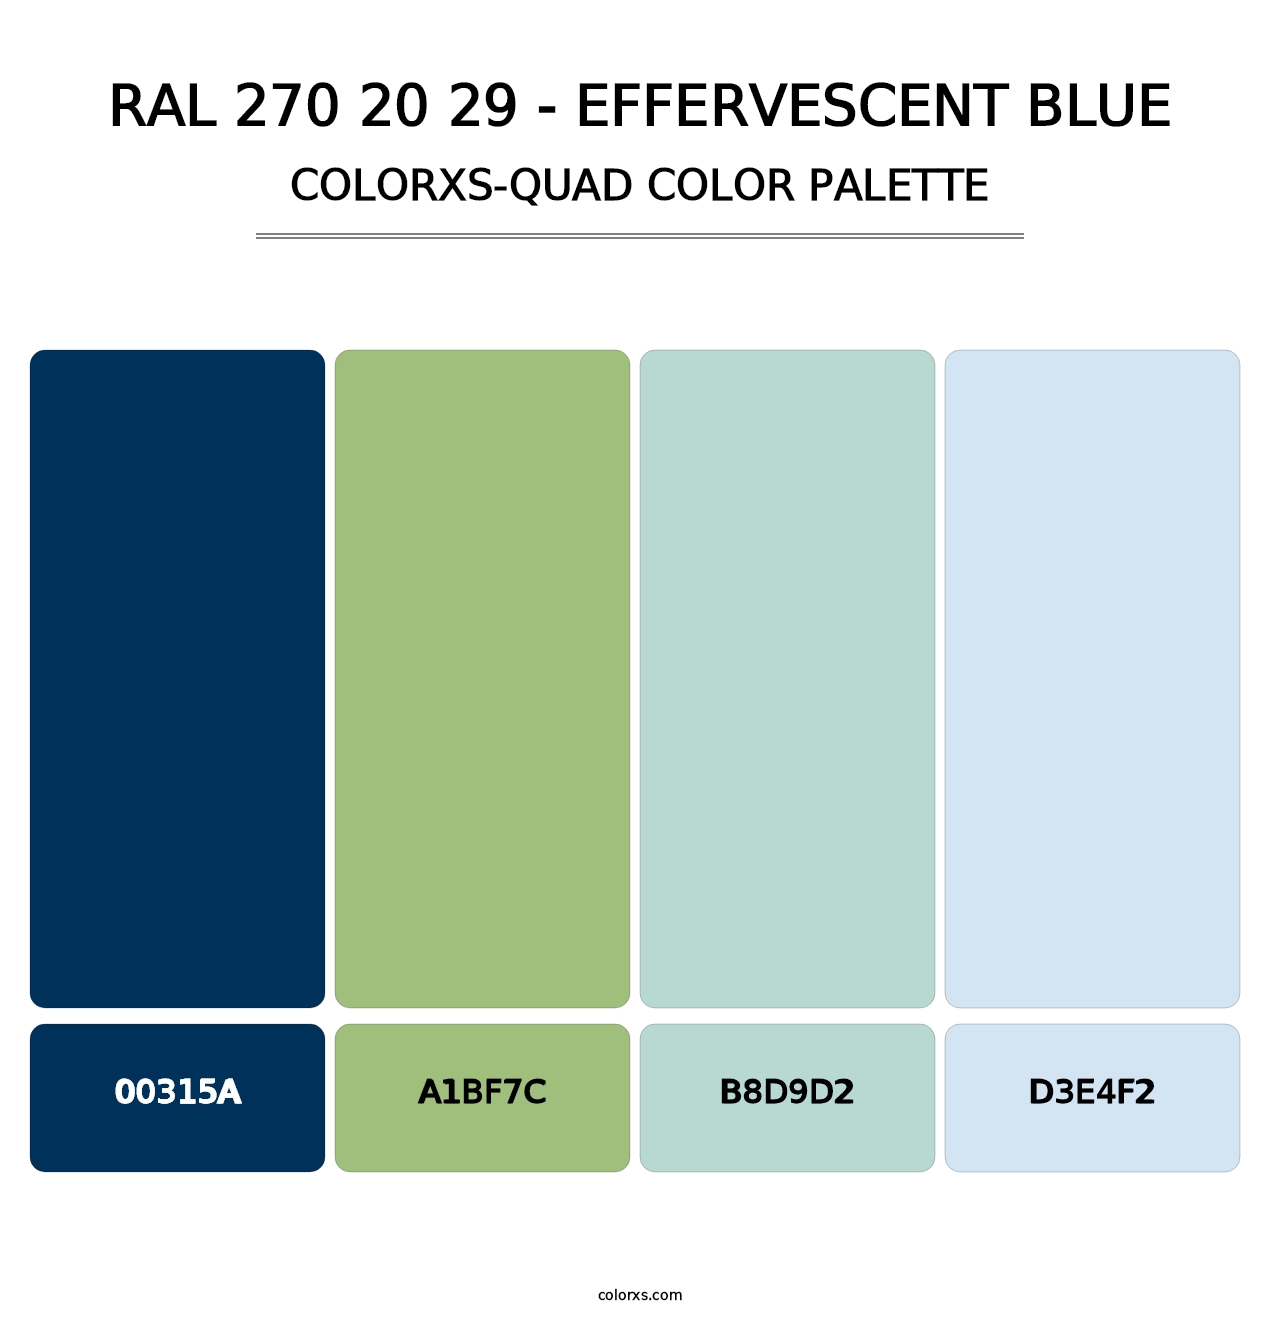 RAL 270 20 29 - Effervescent Blue - Colorxs Quad Palette